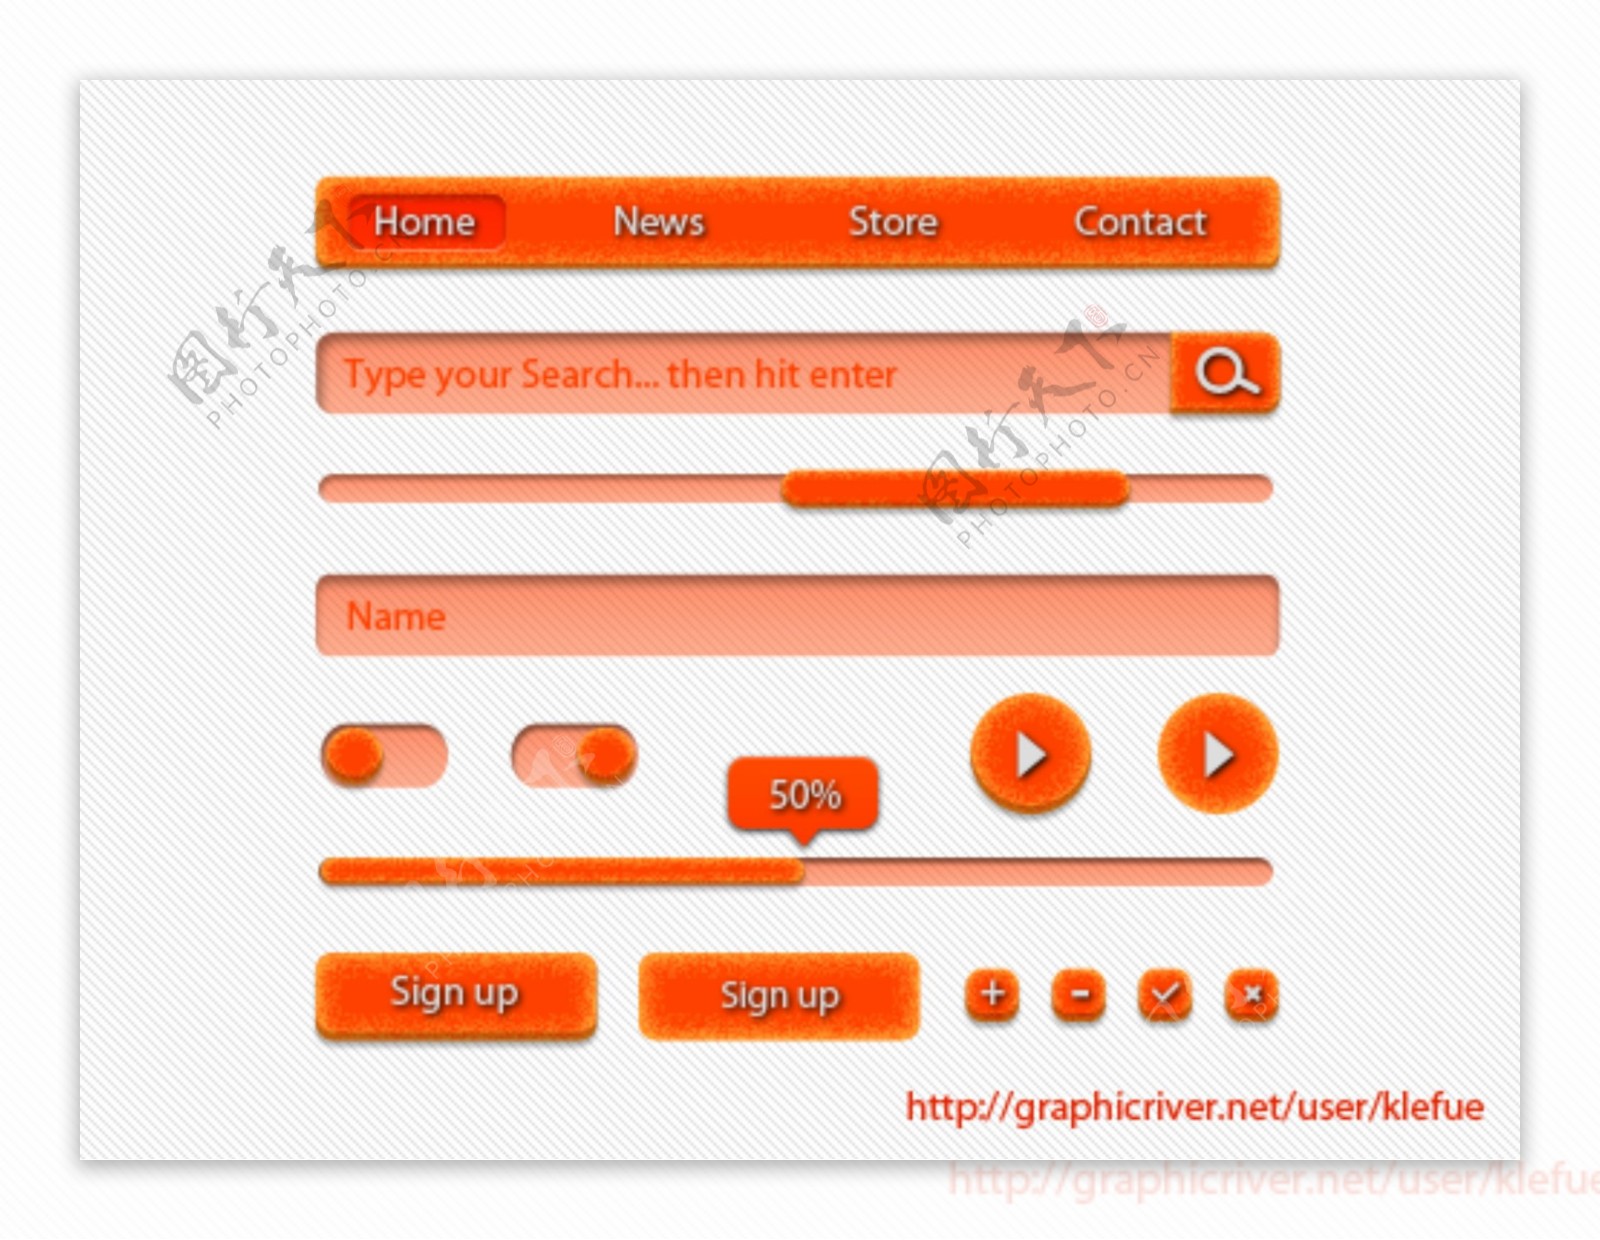 橙色按钮UI素材